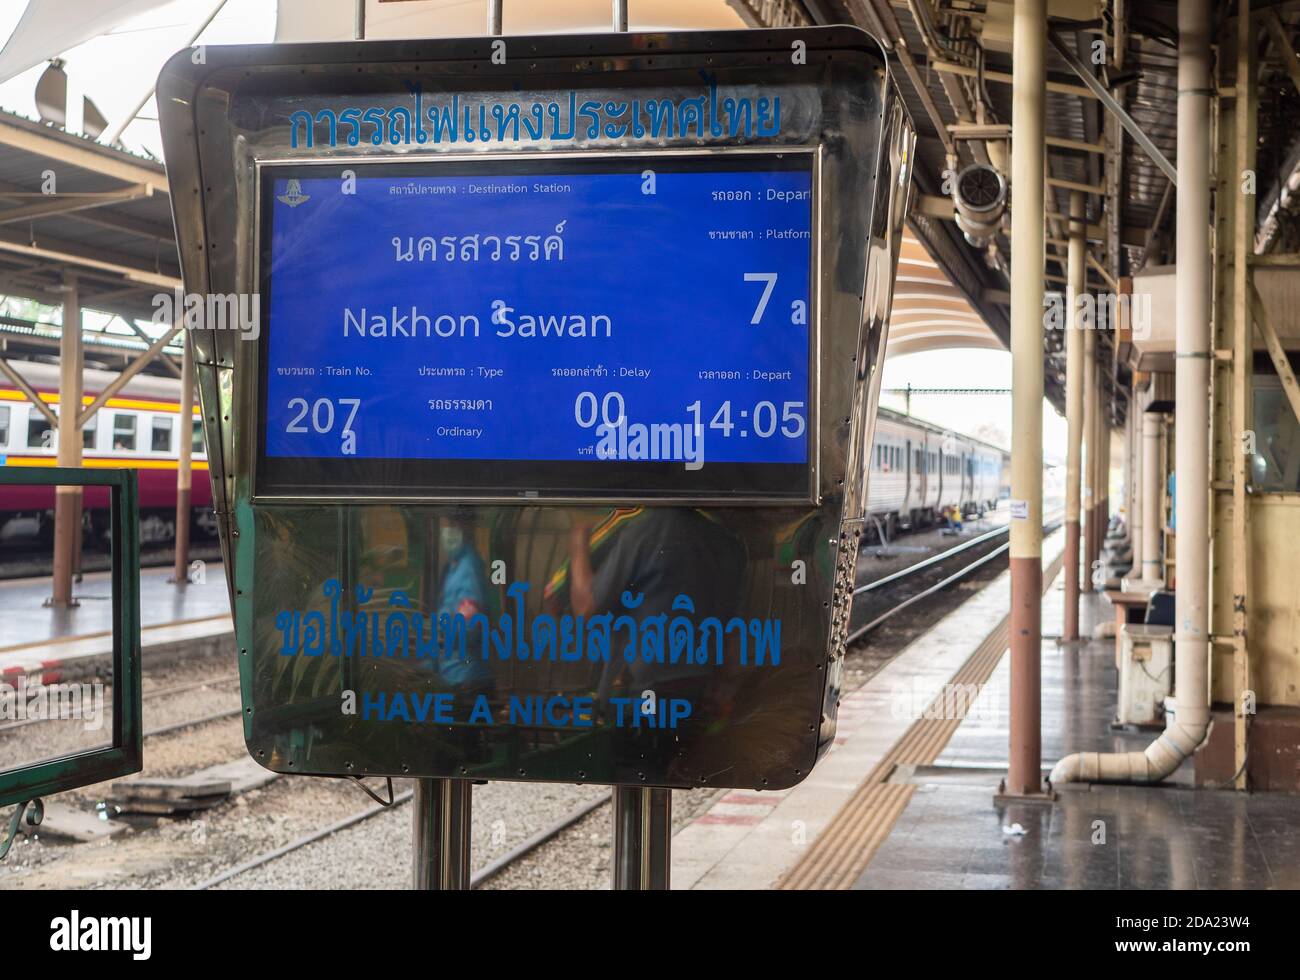 Elektronische Anzeige am Bahnhof Hua Lamphong in Bangkok, die ankündigt, dass der Zug nach Nakhon Sawan um 14:05 Uhr abfährt. Stockfoto